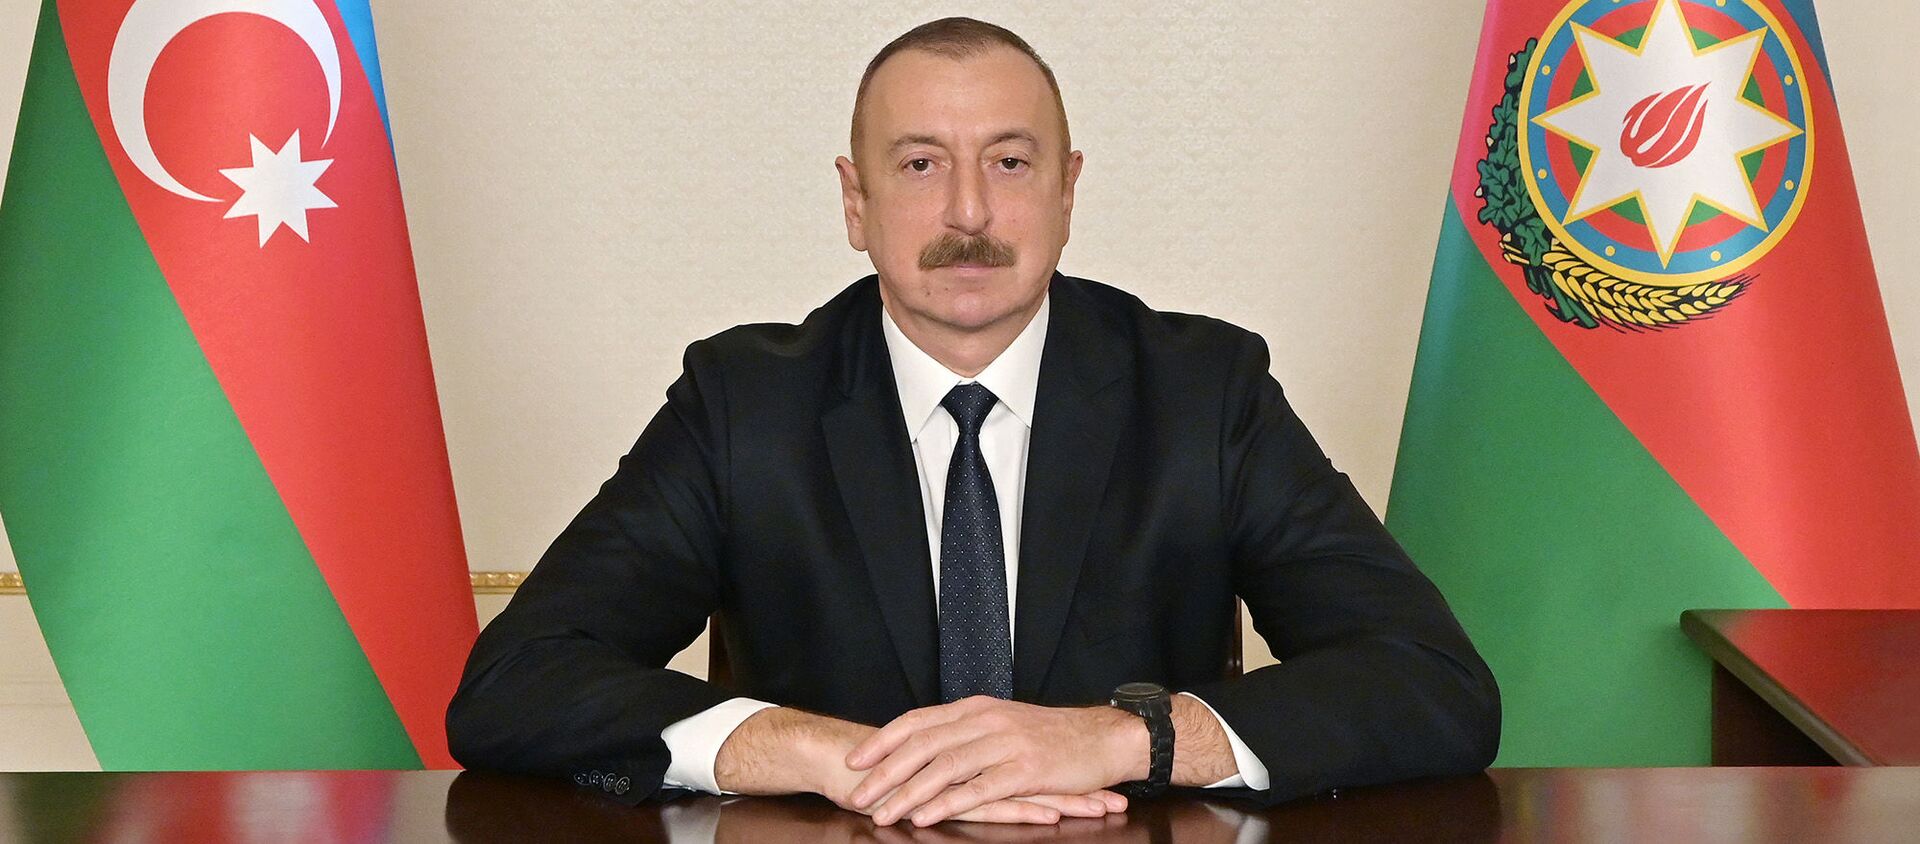 Prezident İlham Əliyev xalqa müraciəti zamanı - Sputnik Азербайджан, 1920, 08.01.2021